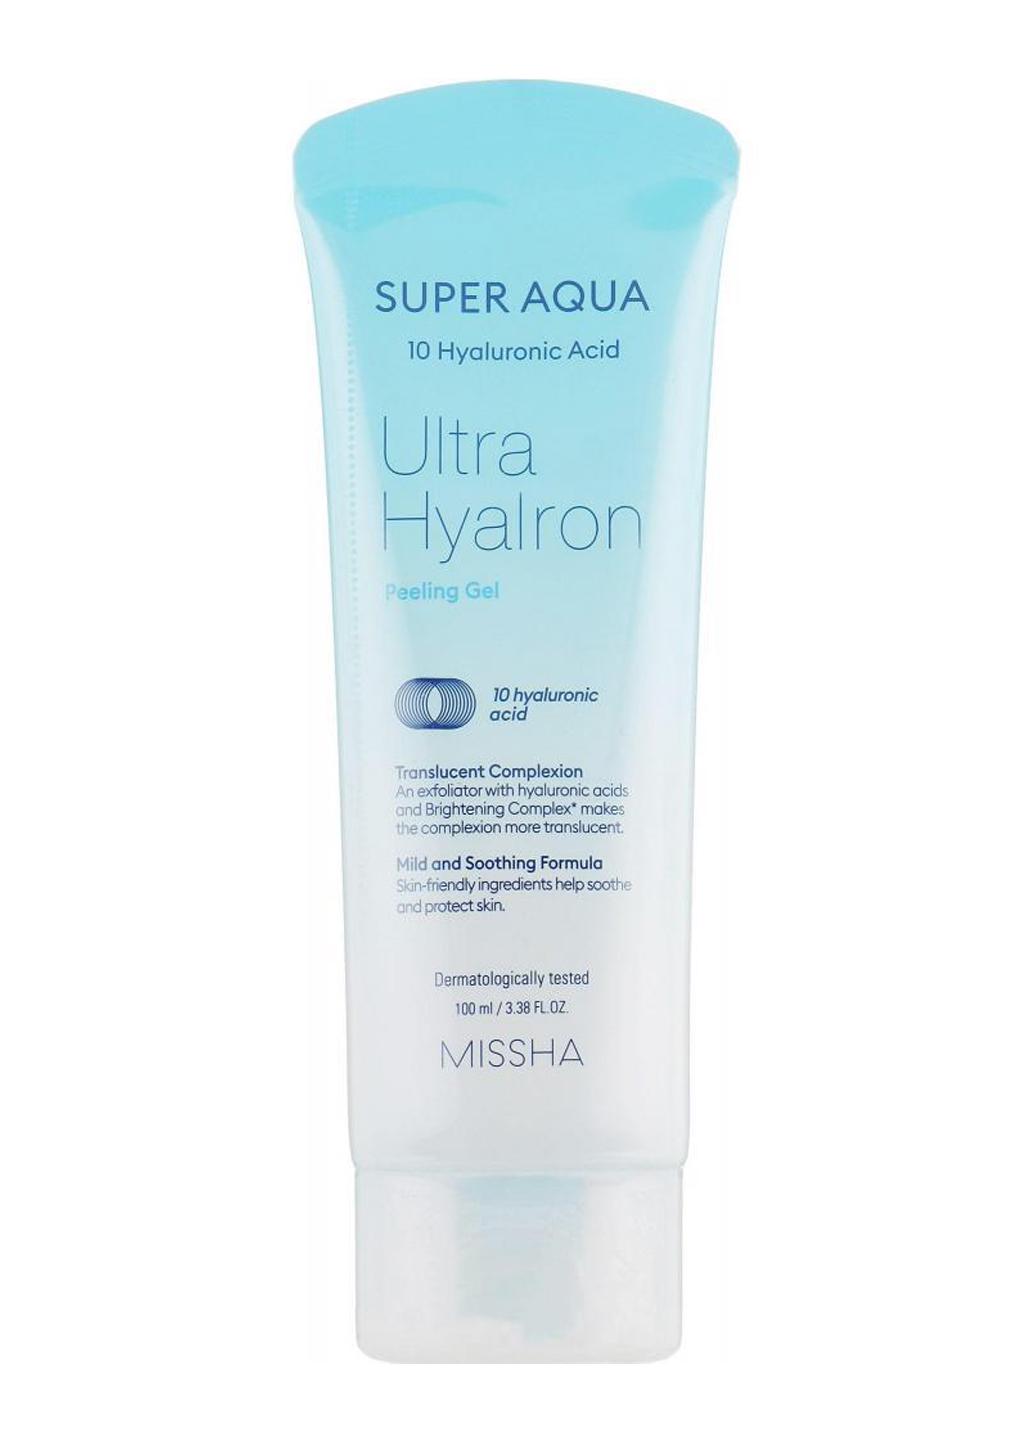 Гель-пилинг MISSHA Super Aqua Ultra Hyalron Peeling Gel для лица 100 мл (528360)